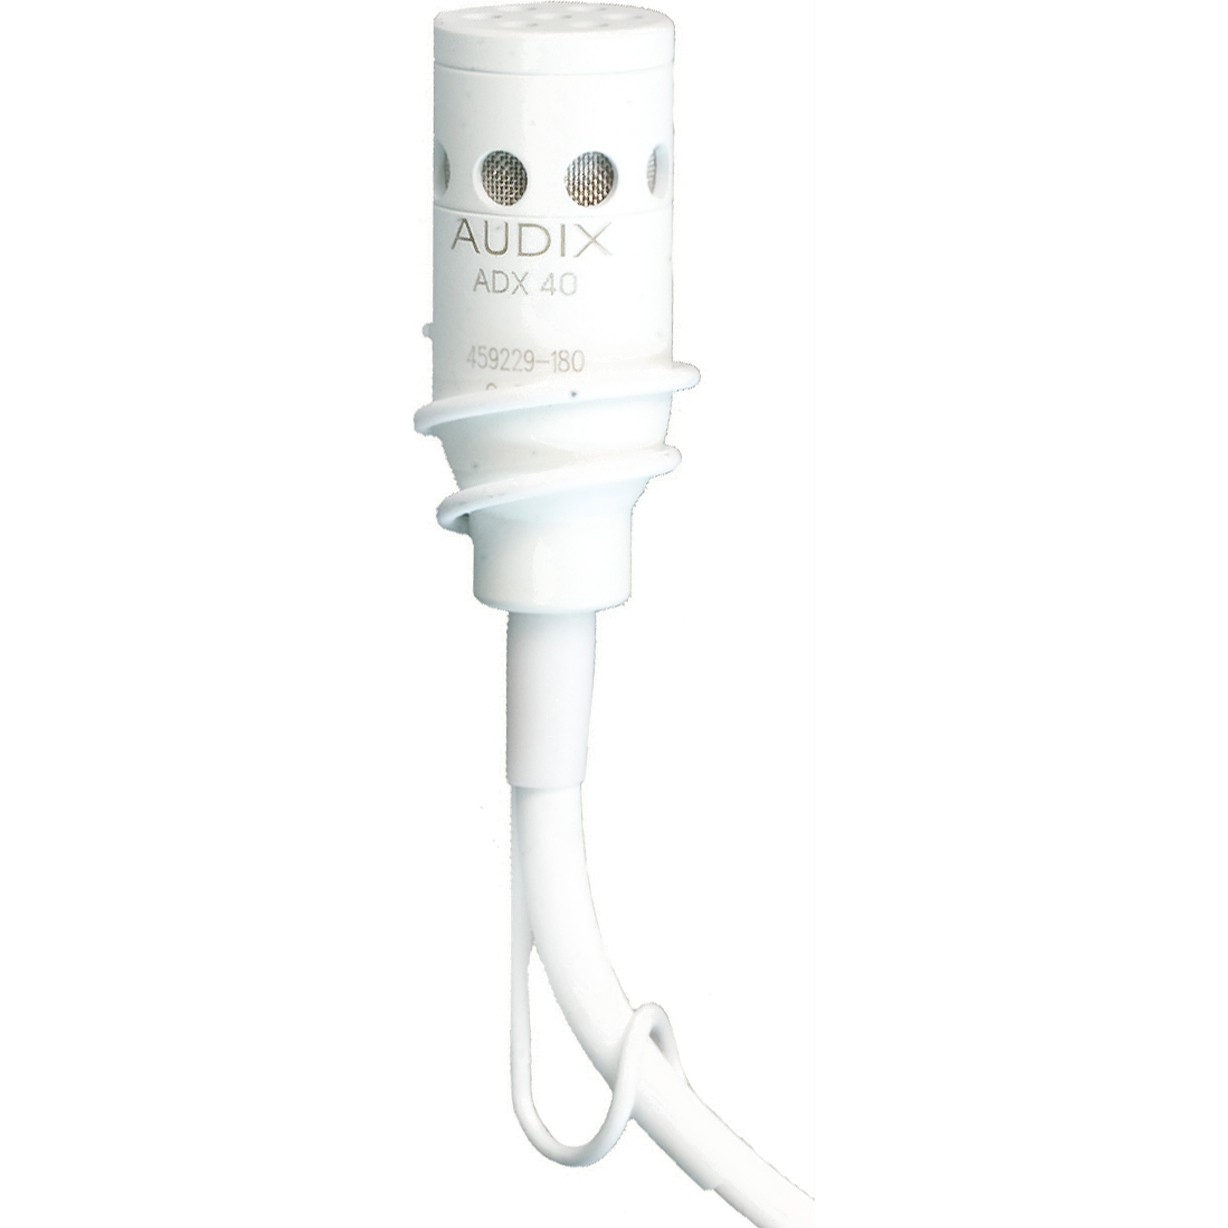 Студийные микрофоны AUDIX ADX40WHC микрофон mobicent bm 800 конденсаторный с ветрозащитой кабелем и переходником для телефона